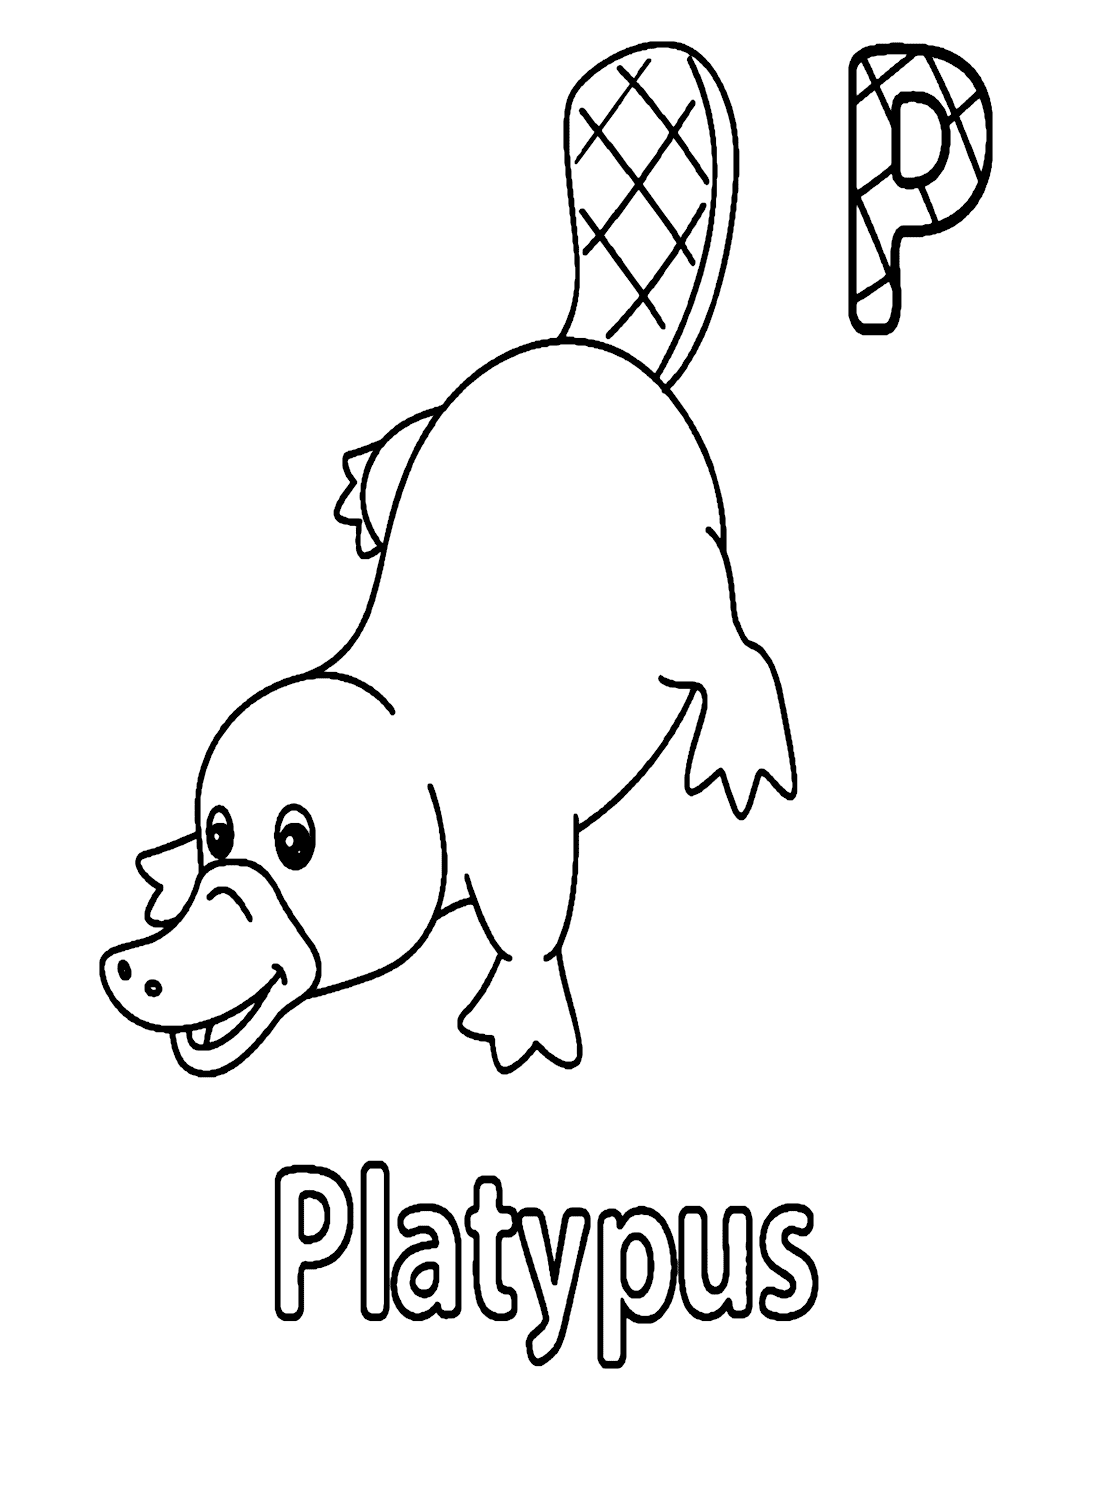 Buchstabe P für Platypus von Platypus